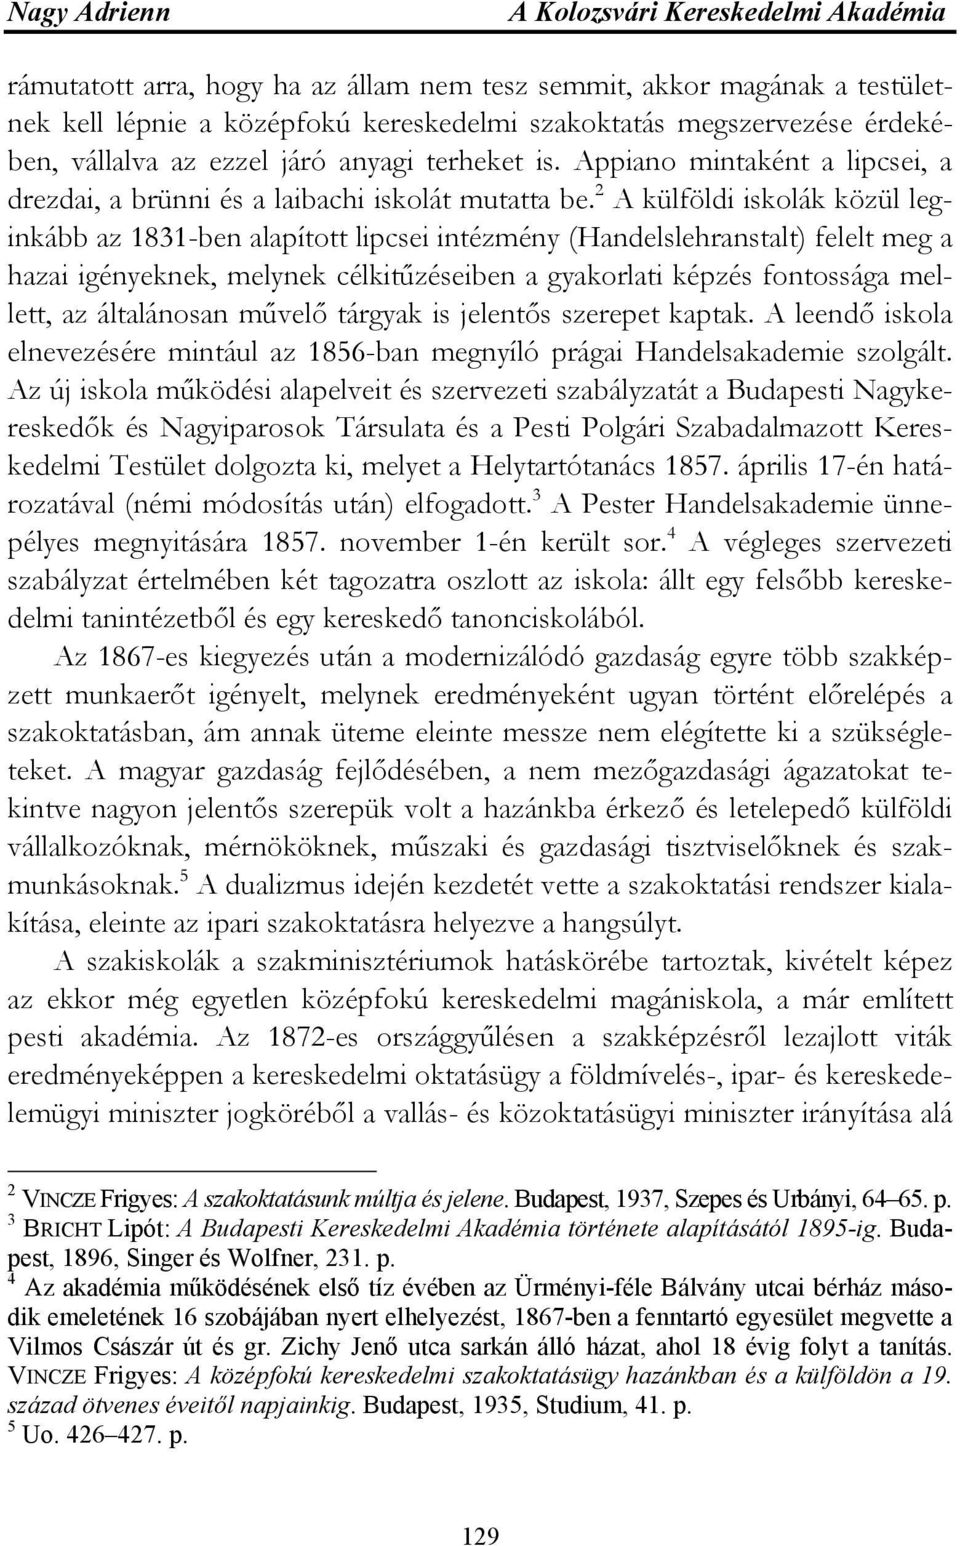 2 A külföldi iskolák közül leginkább az 1831-ben alapított lipcsei intézmény (Handelslehranstalt) felelt meg a hazai igényeknek, melynek célkitűzéseiben a gyakorlati képzés fontossága mellett, az